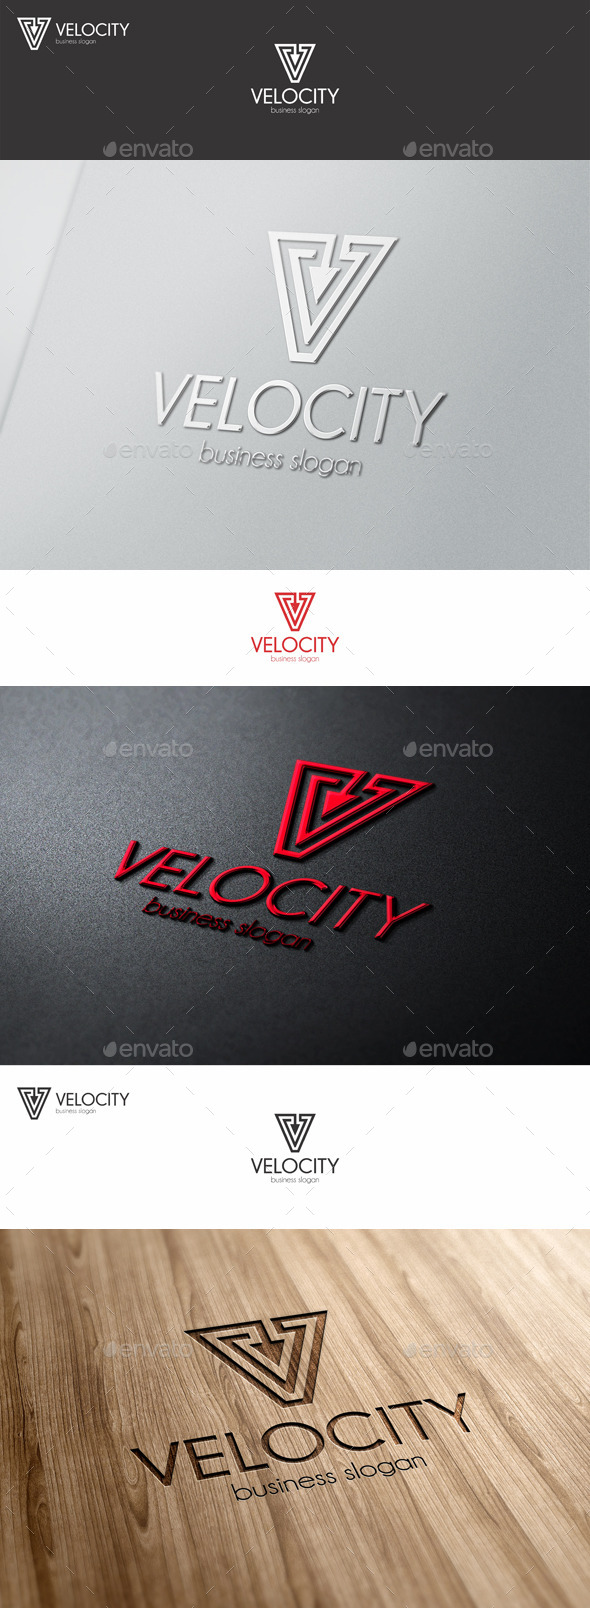 Velocity Vector - V Letter Logo